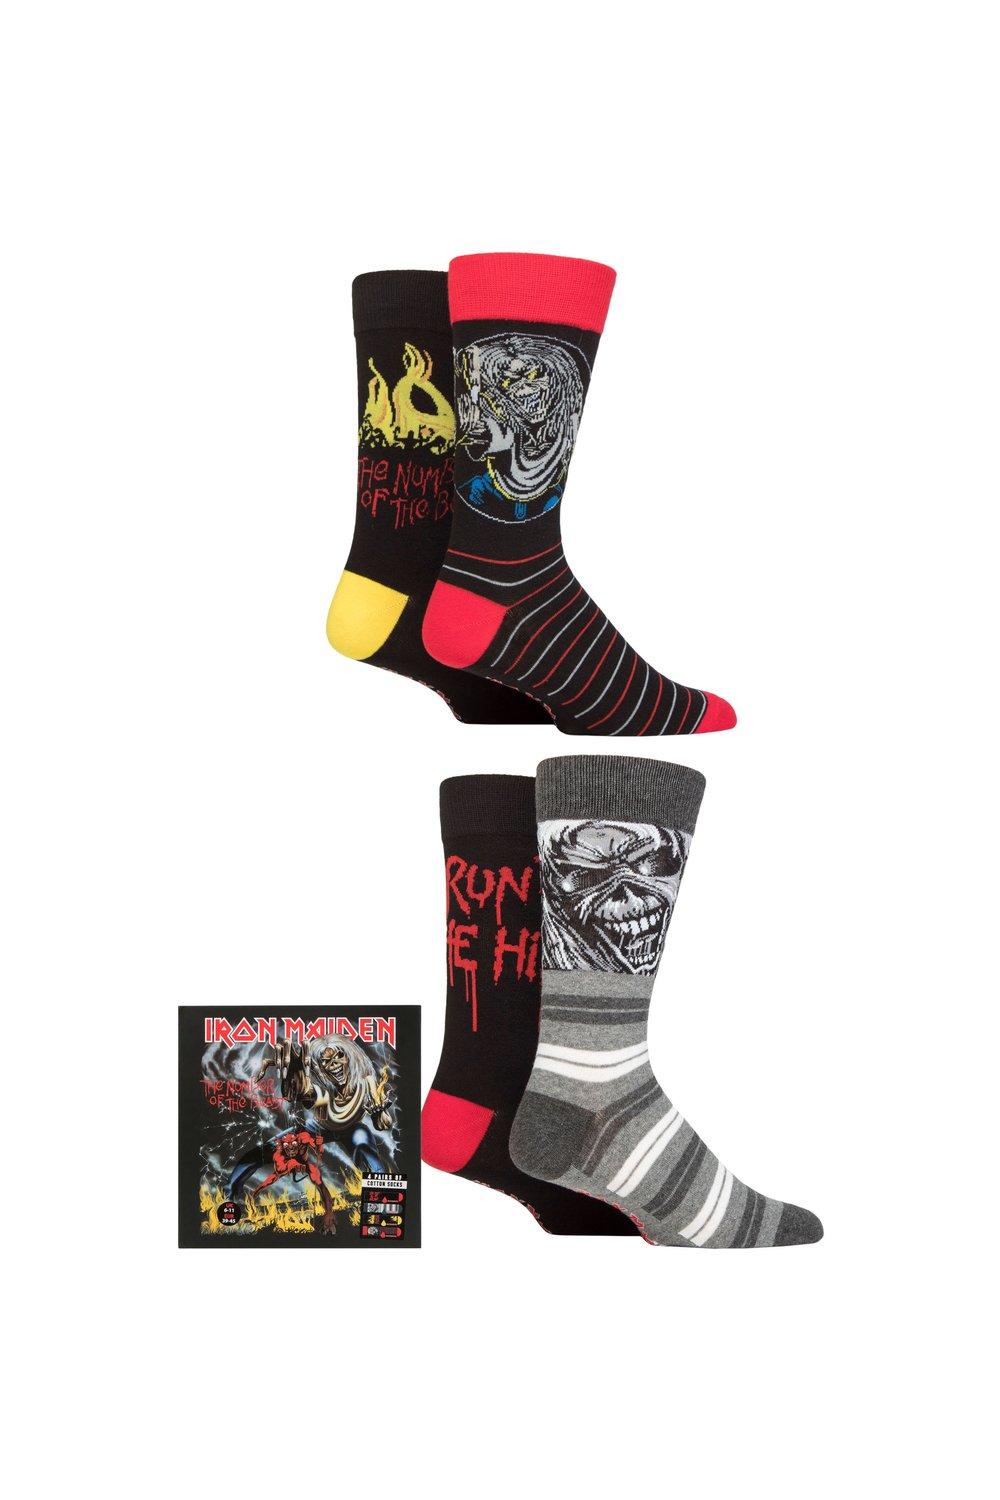 Iron Maiden, 4 пары хлопковых носков в подарочной упаковке, эксклюзивно для SOCKSHOP, мультиколор universal iron maiden the number of the beast виниловая пластинка